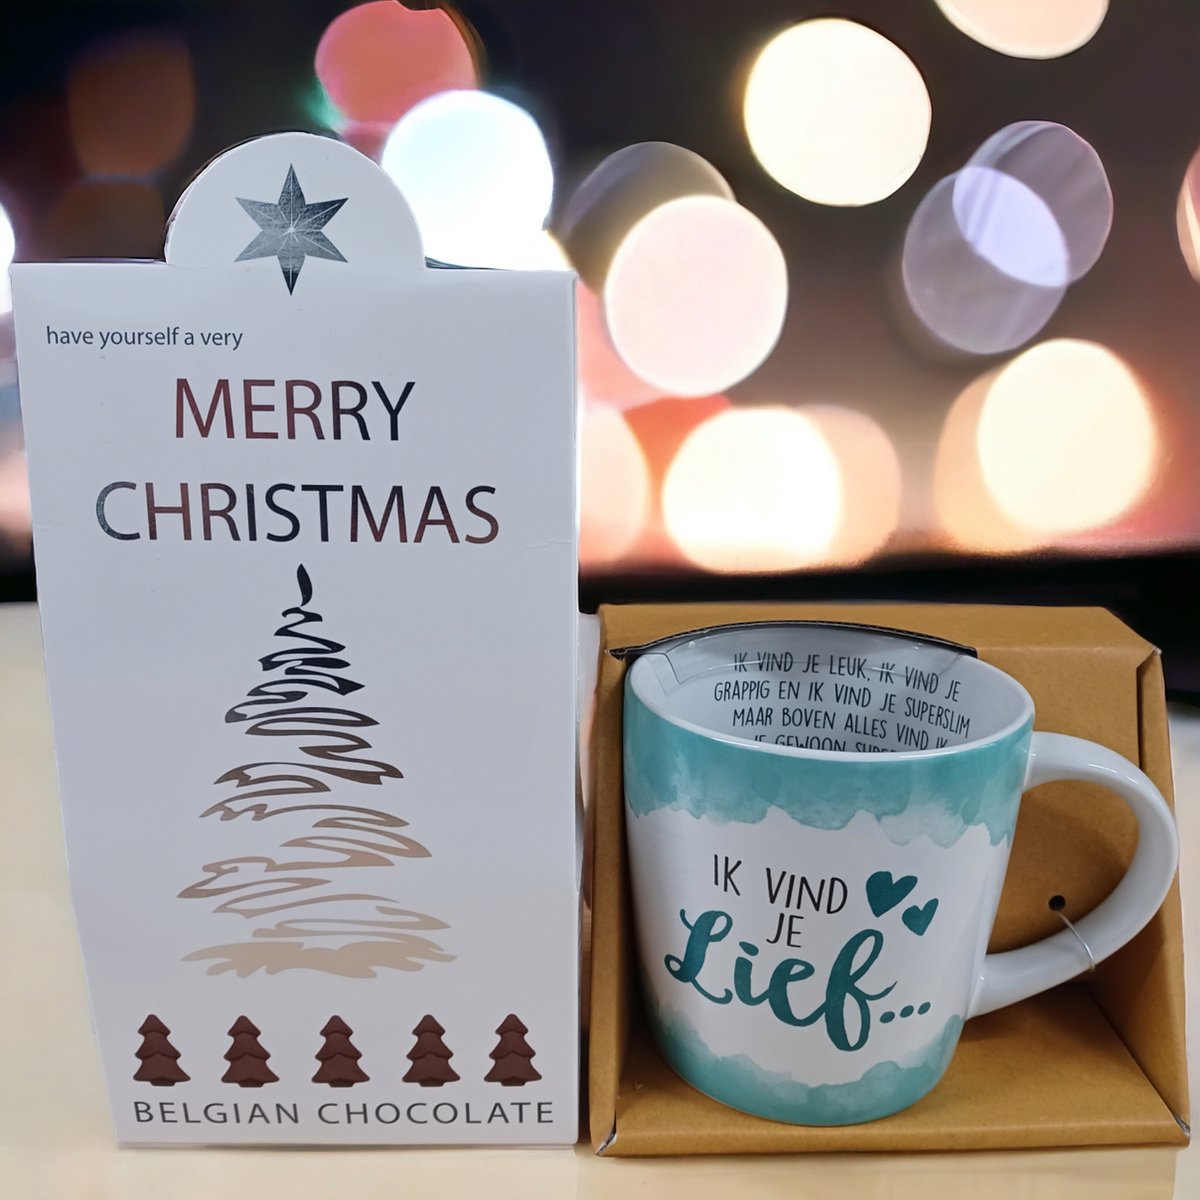 Ik vind je lief-Liefde-Dankbaarheid-Kerstcadeau-Kerstpakket-Giftset-December Cadeau-Merry Christmas-Happy New Year-Belgische Chocolade-Champagne Flesjes-Kerst Chocolade-Zoetigheid-Mok-Beker-Magische dagen-Familiediner-Kerstdiner-Kerstfeest-Oudejaar